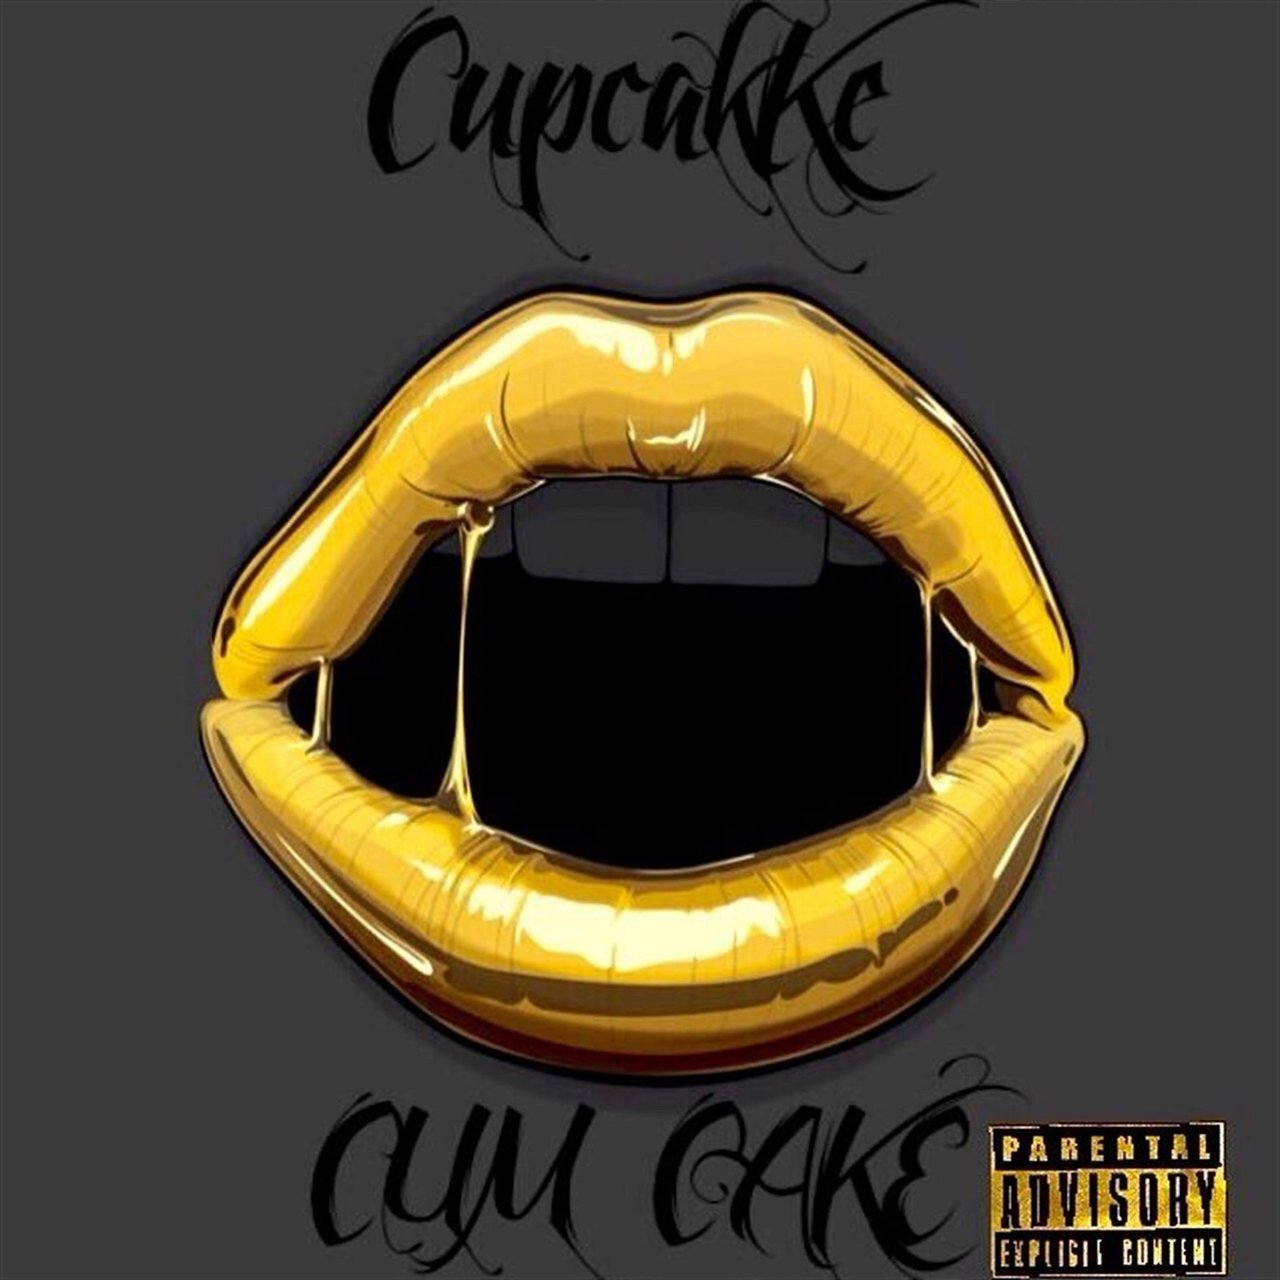 CupcakKe — Pedophile cover artwork